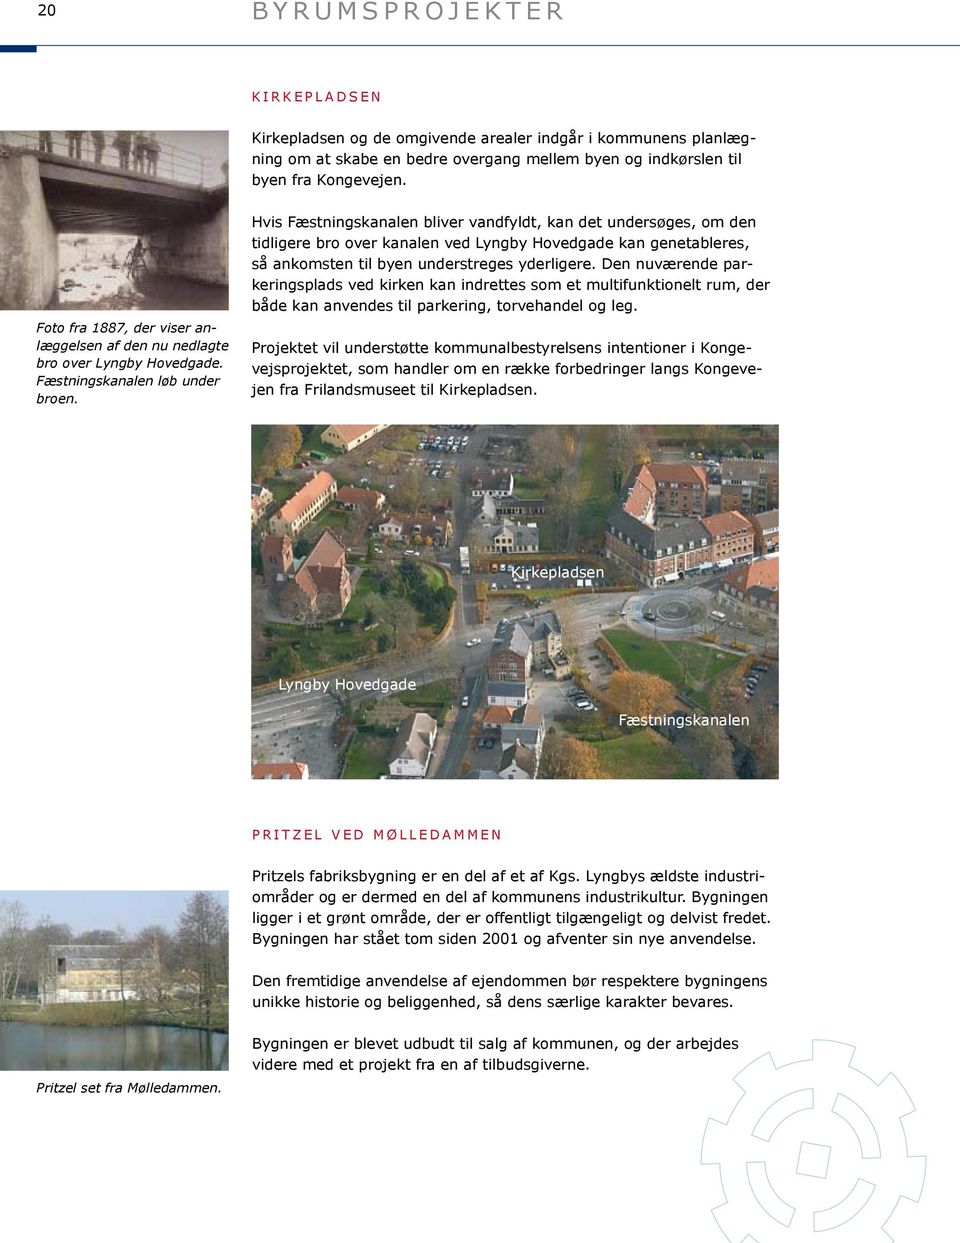 Hvis Fæstningskanalen bliver vandfyldt, kan det undersøges, om den tidligere bro over kanalen ved Lyngby Hovedgade kan genetableres, så ankomsten til byen understreges yderligere.